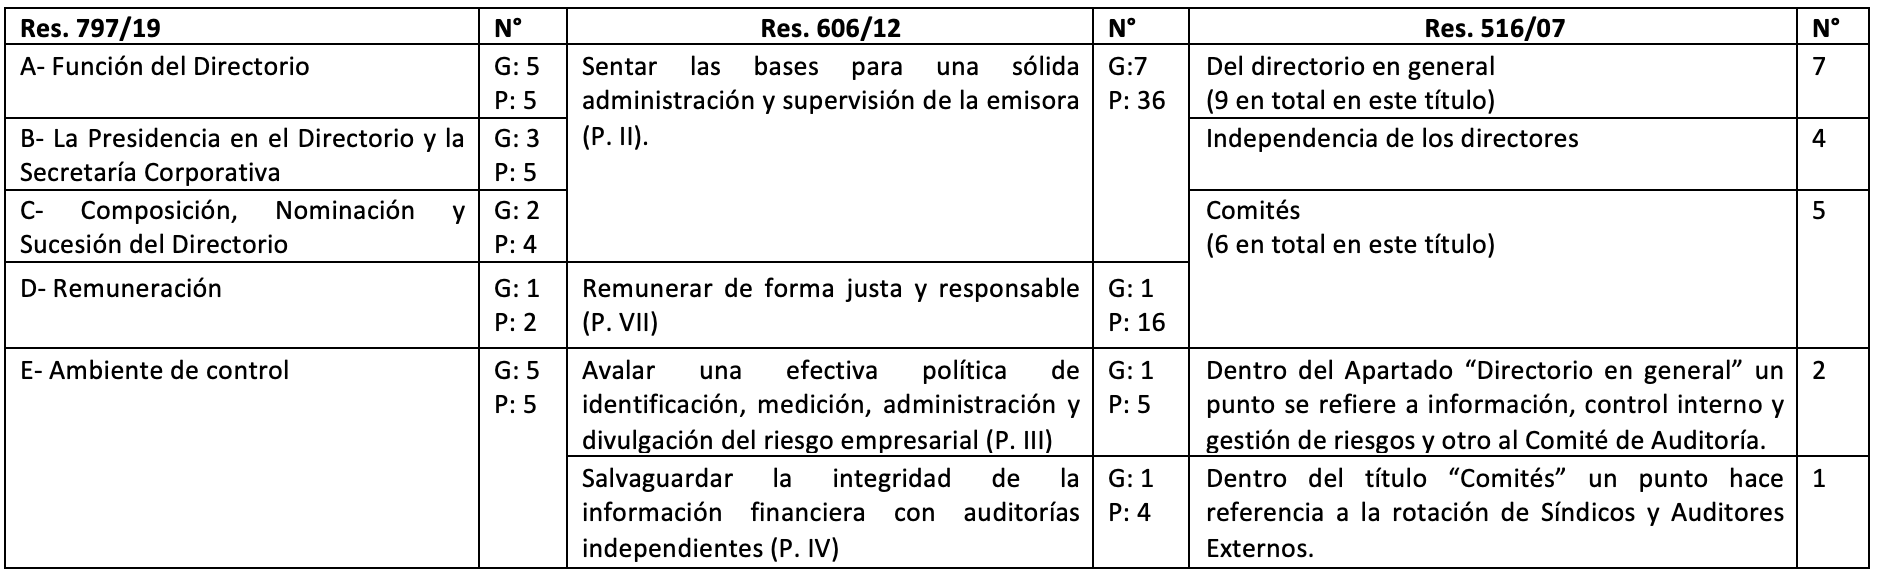 Comparación de la estructura de las Res. CNV 516/07, 606/12 y 797/19